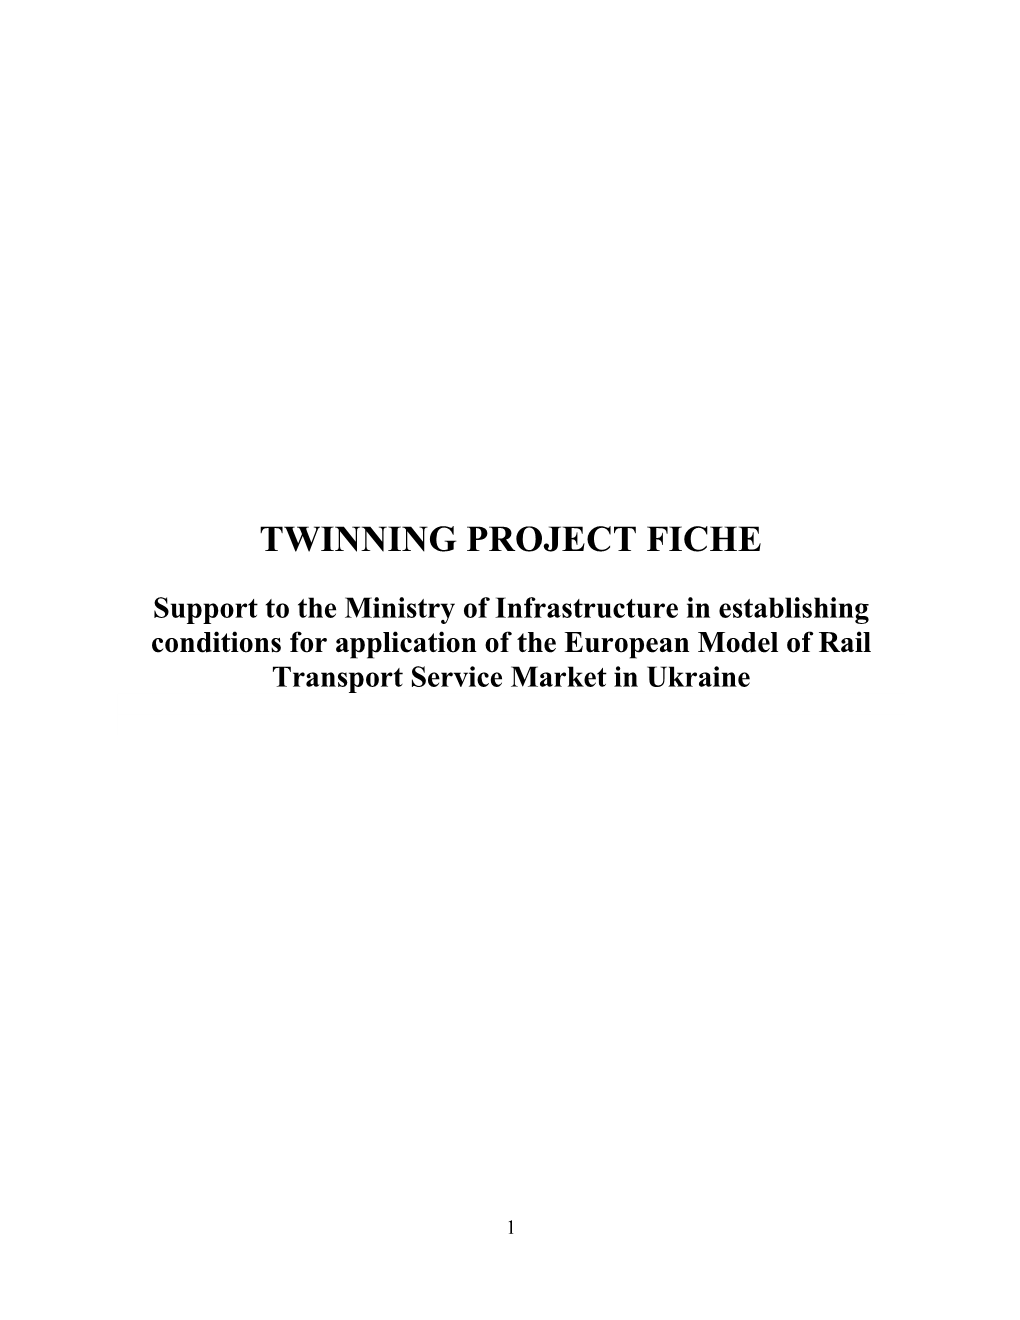 Twinning Project Fiche